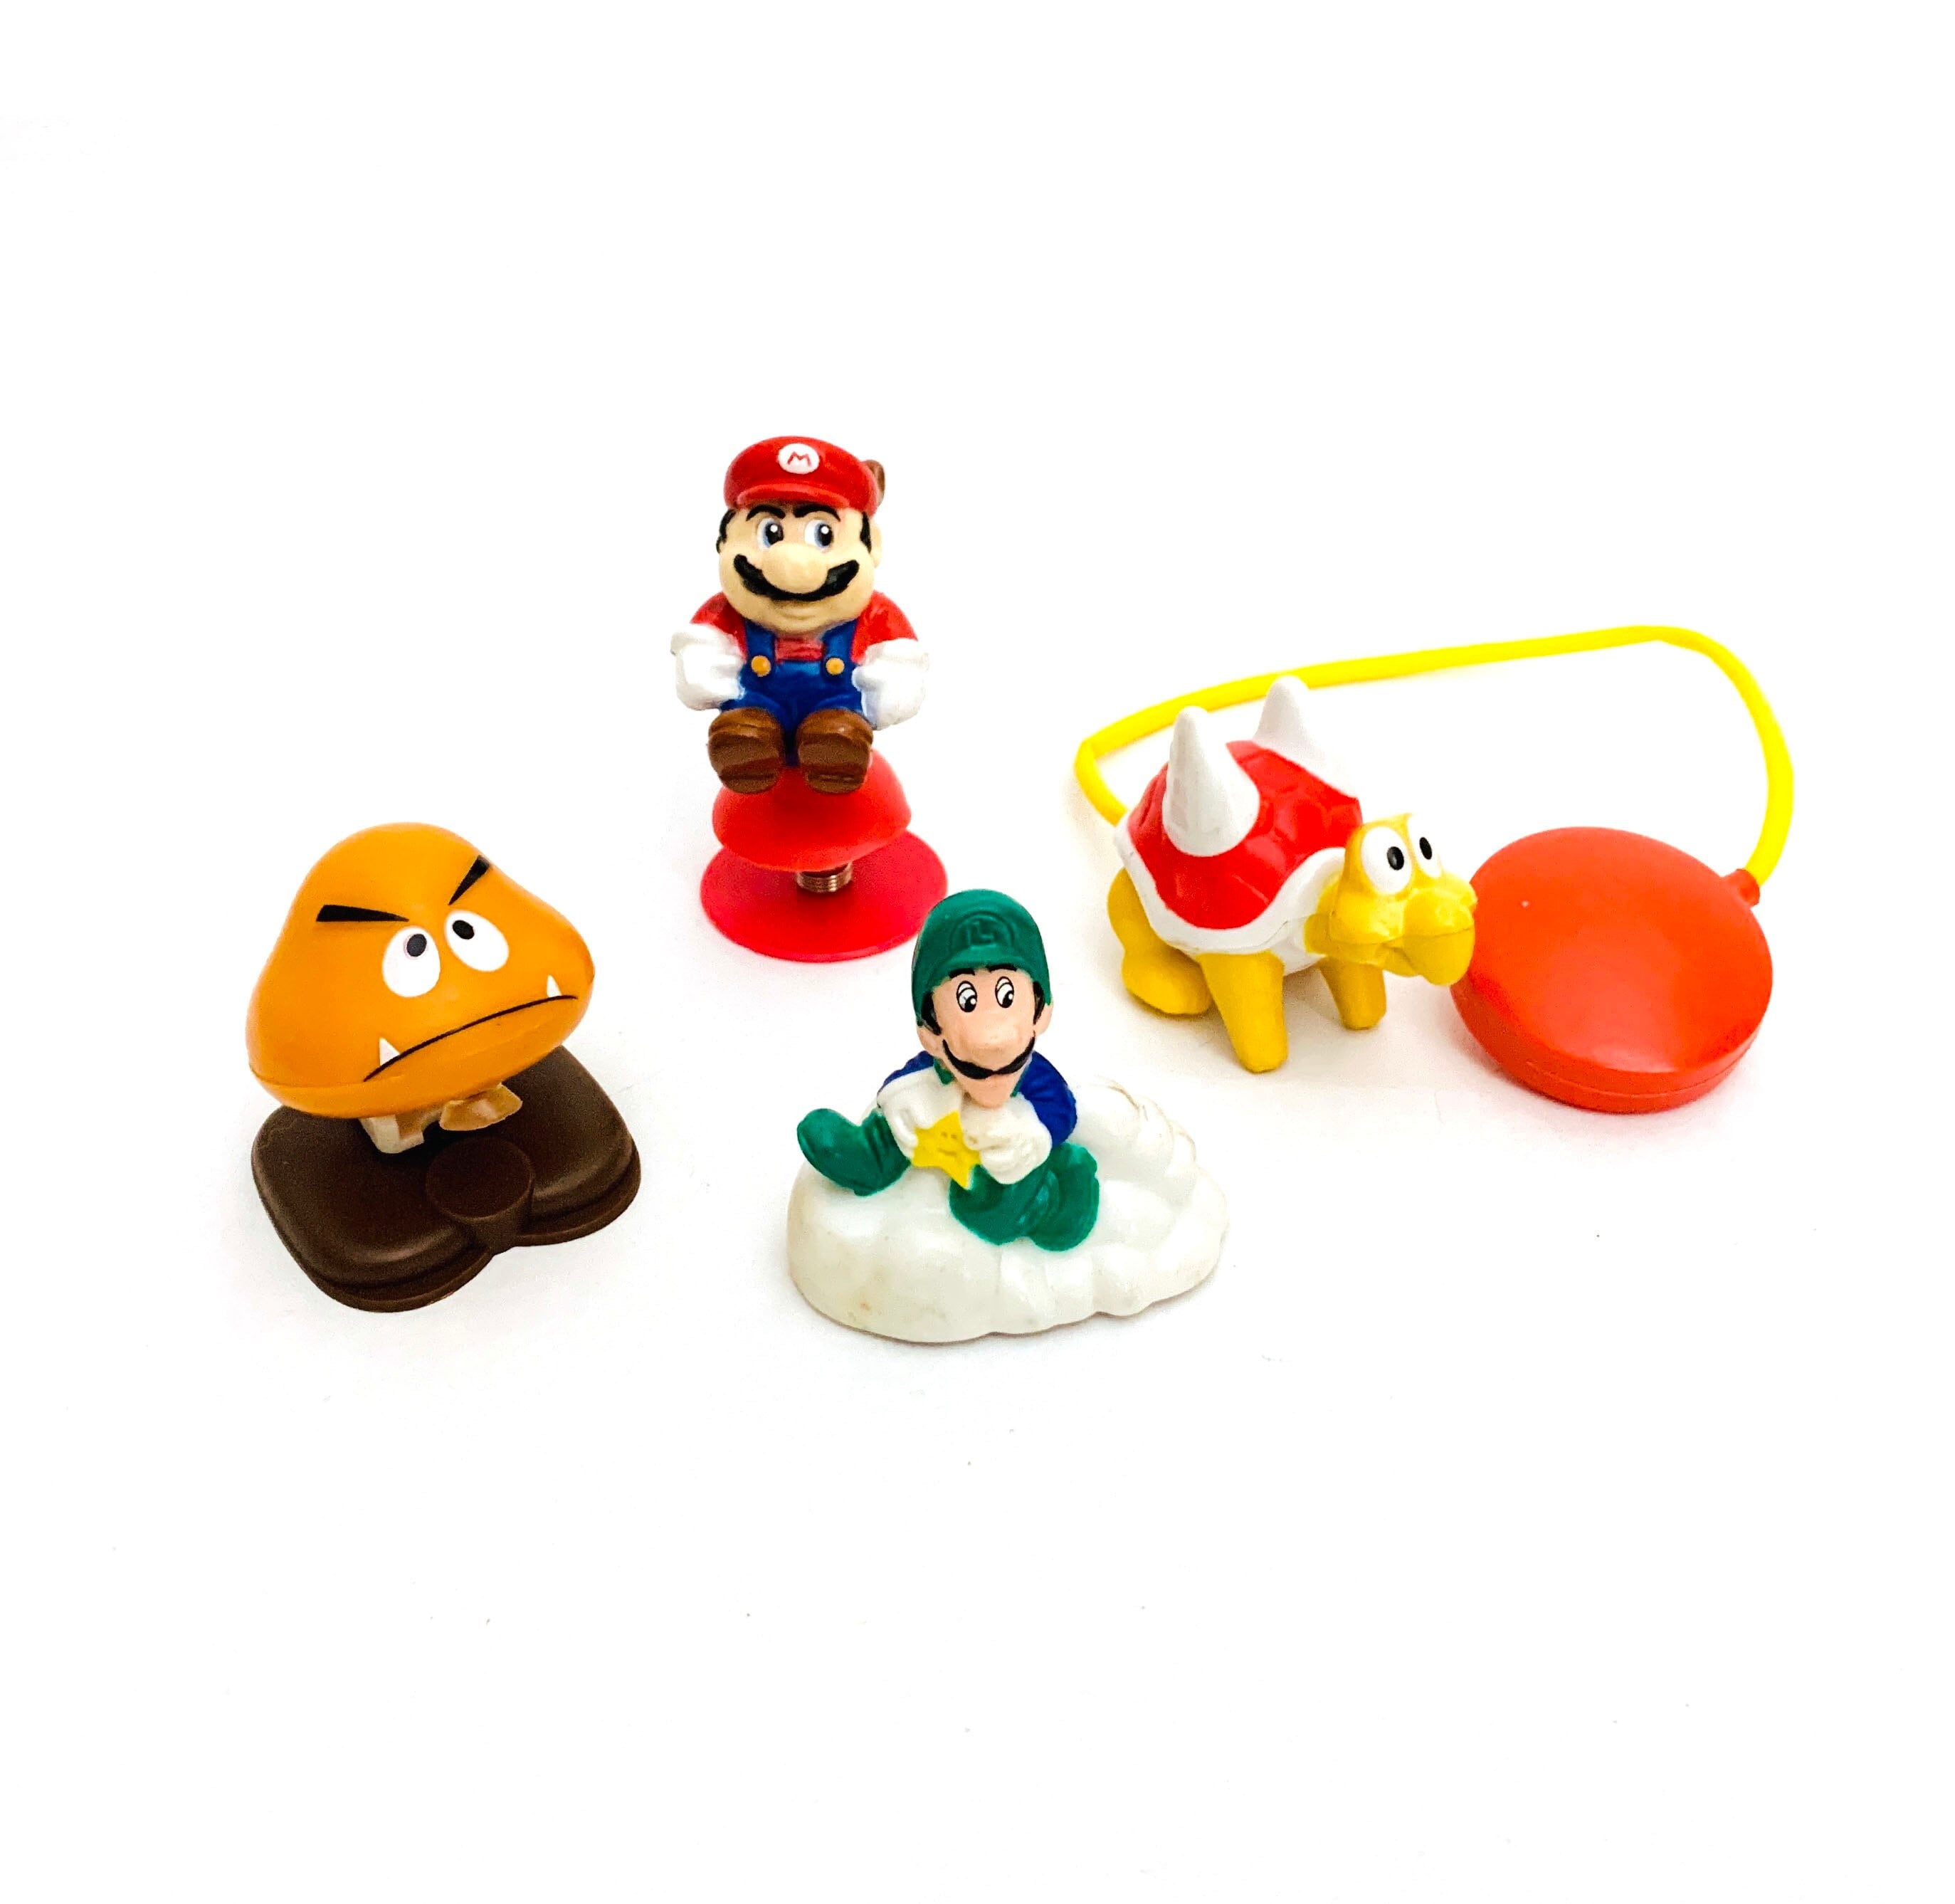 Vintage Nintendo Mario Bros Super Mario 3 Spielzeug Mcdonalds